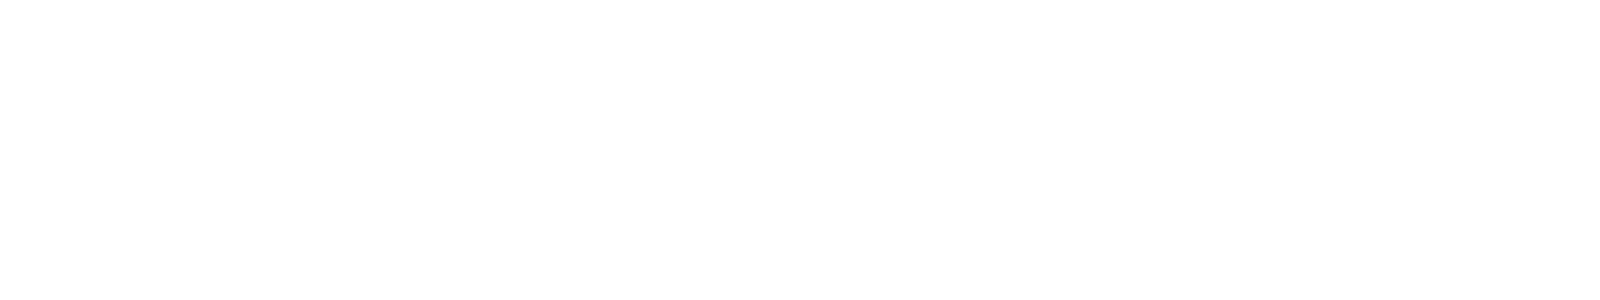 s7law logo biale2 - Medycyna Pracy